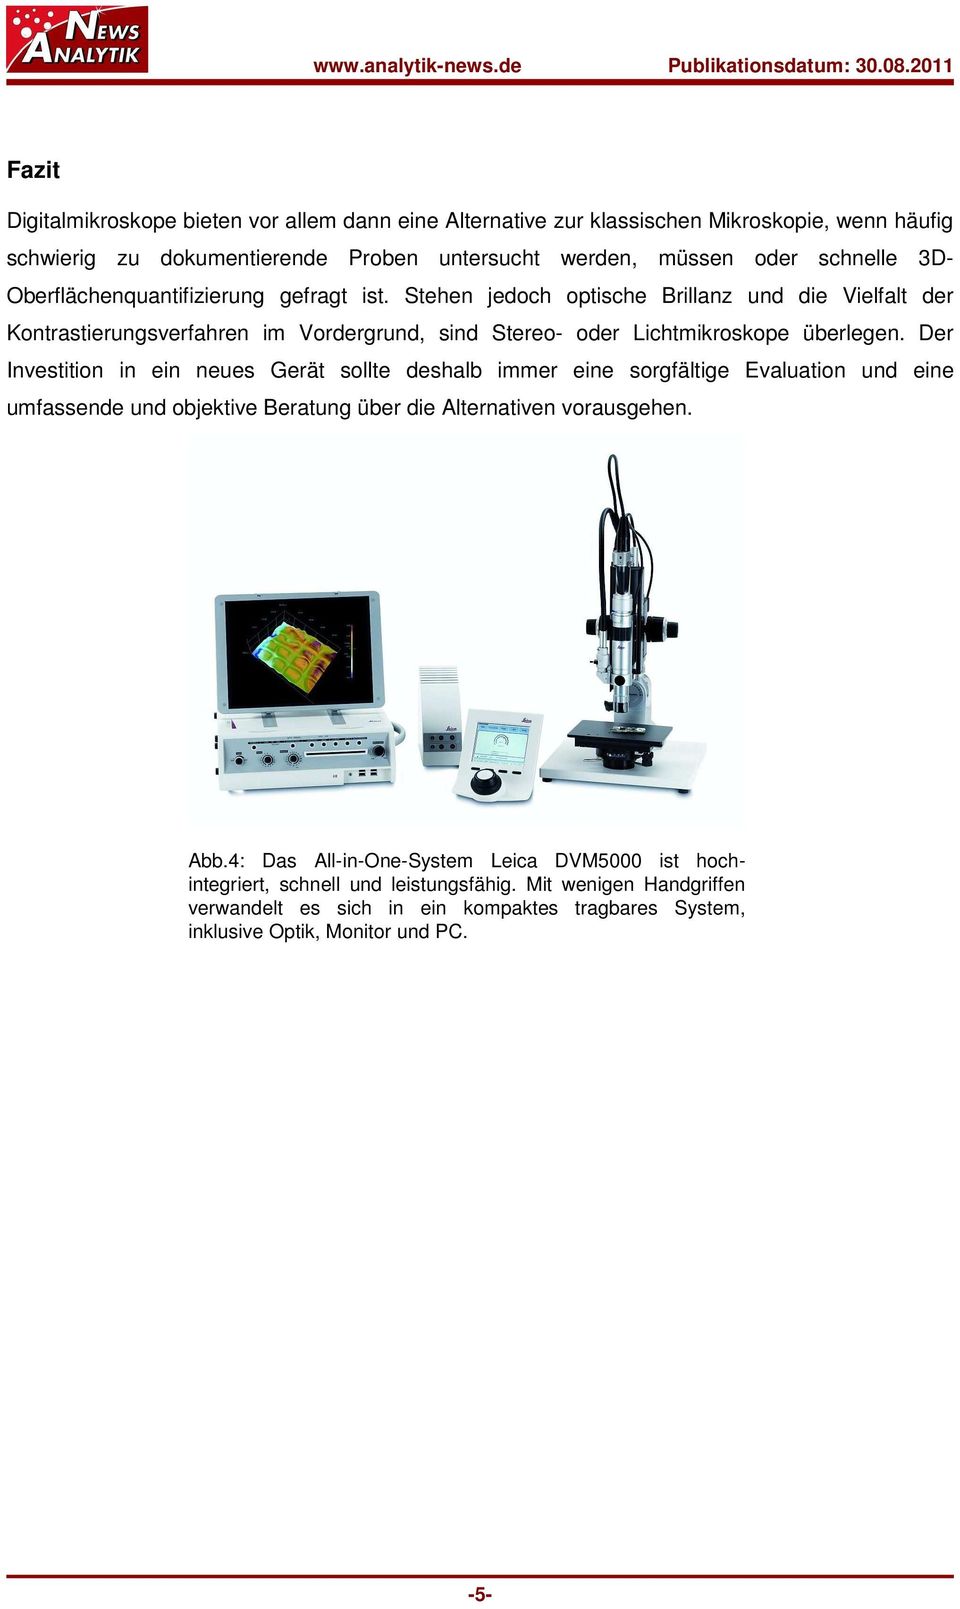 Fazit Digitalmikroskope bieten vor allem dann eine Alternative zur klassischen Mikroskopie, wenn häufig schwierig zu dokumentierende Proben untersucht werden, müssen oder schnelle